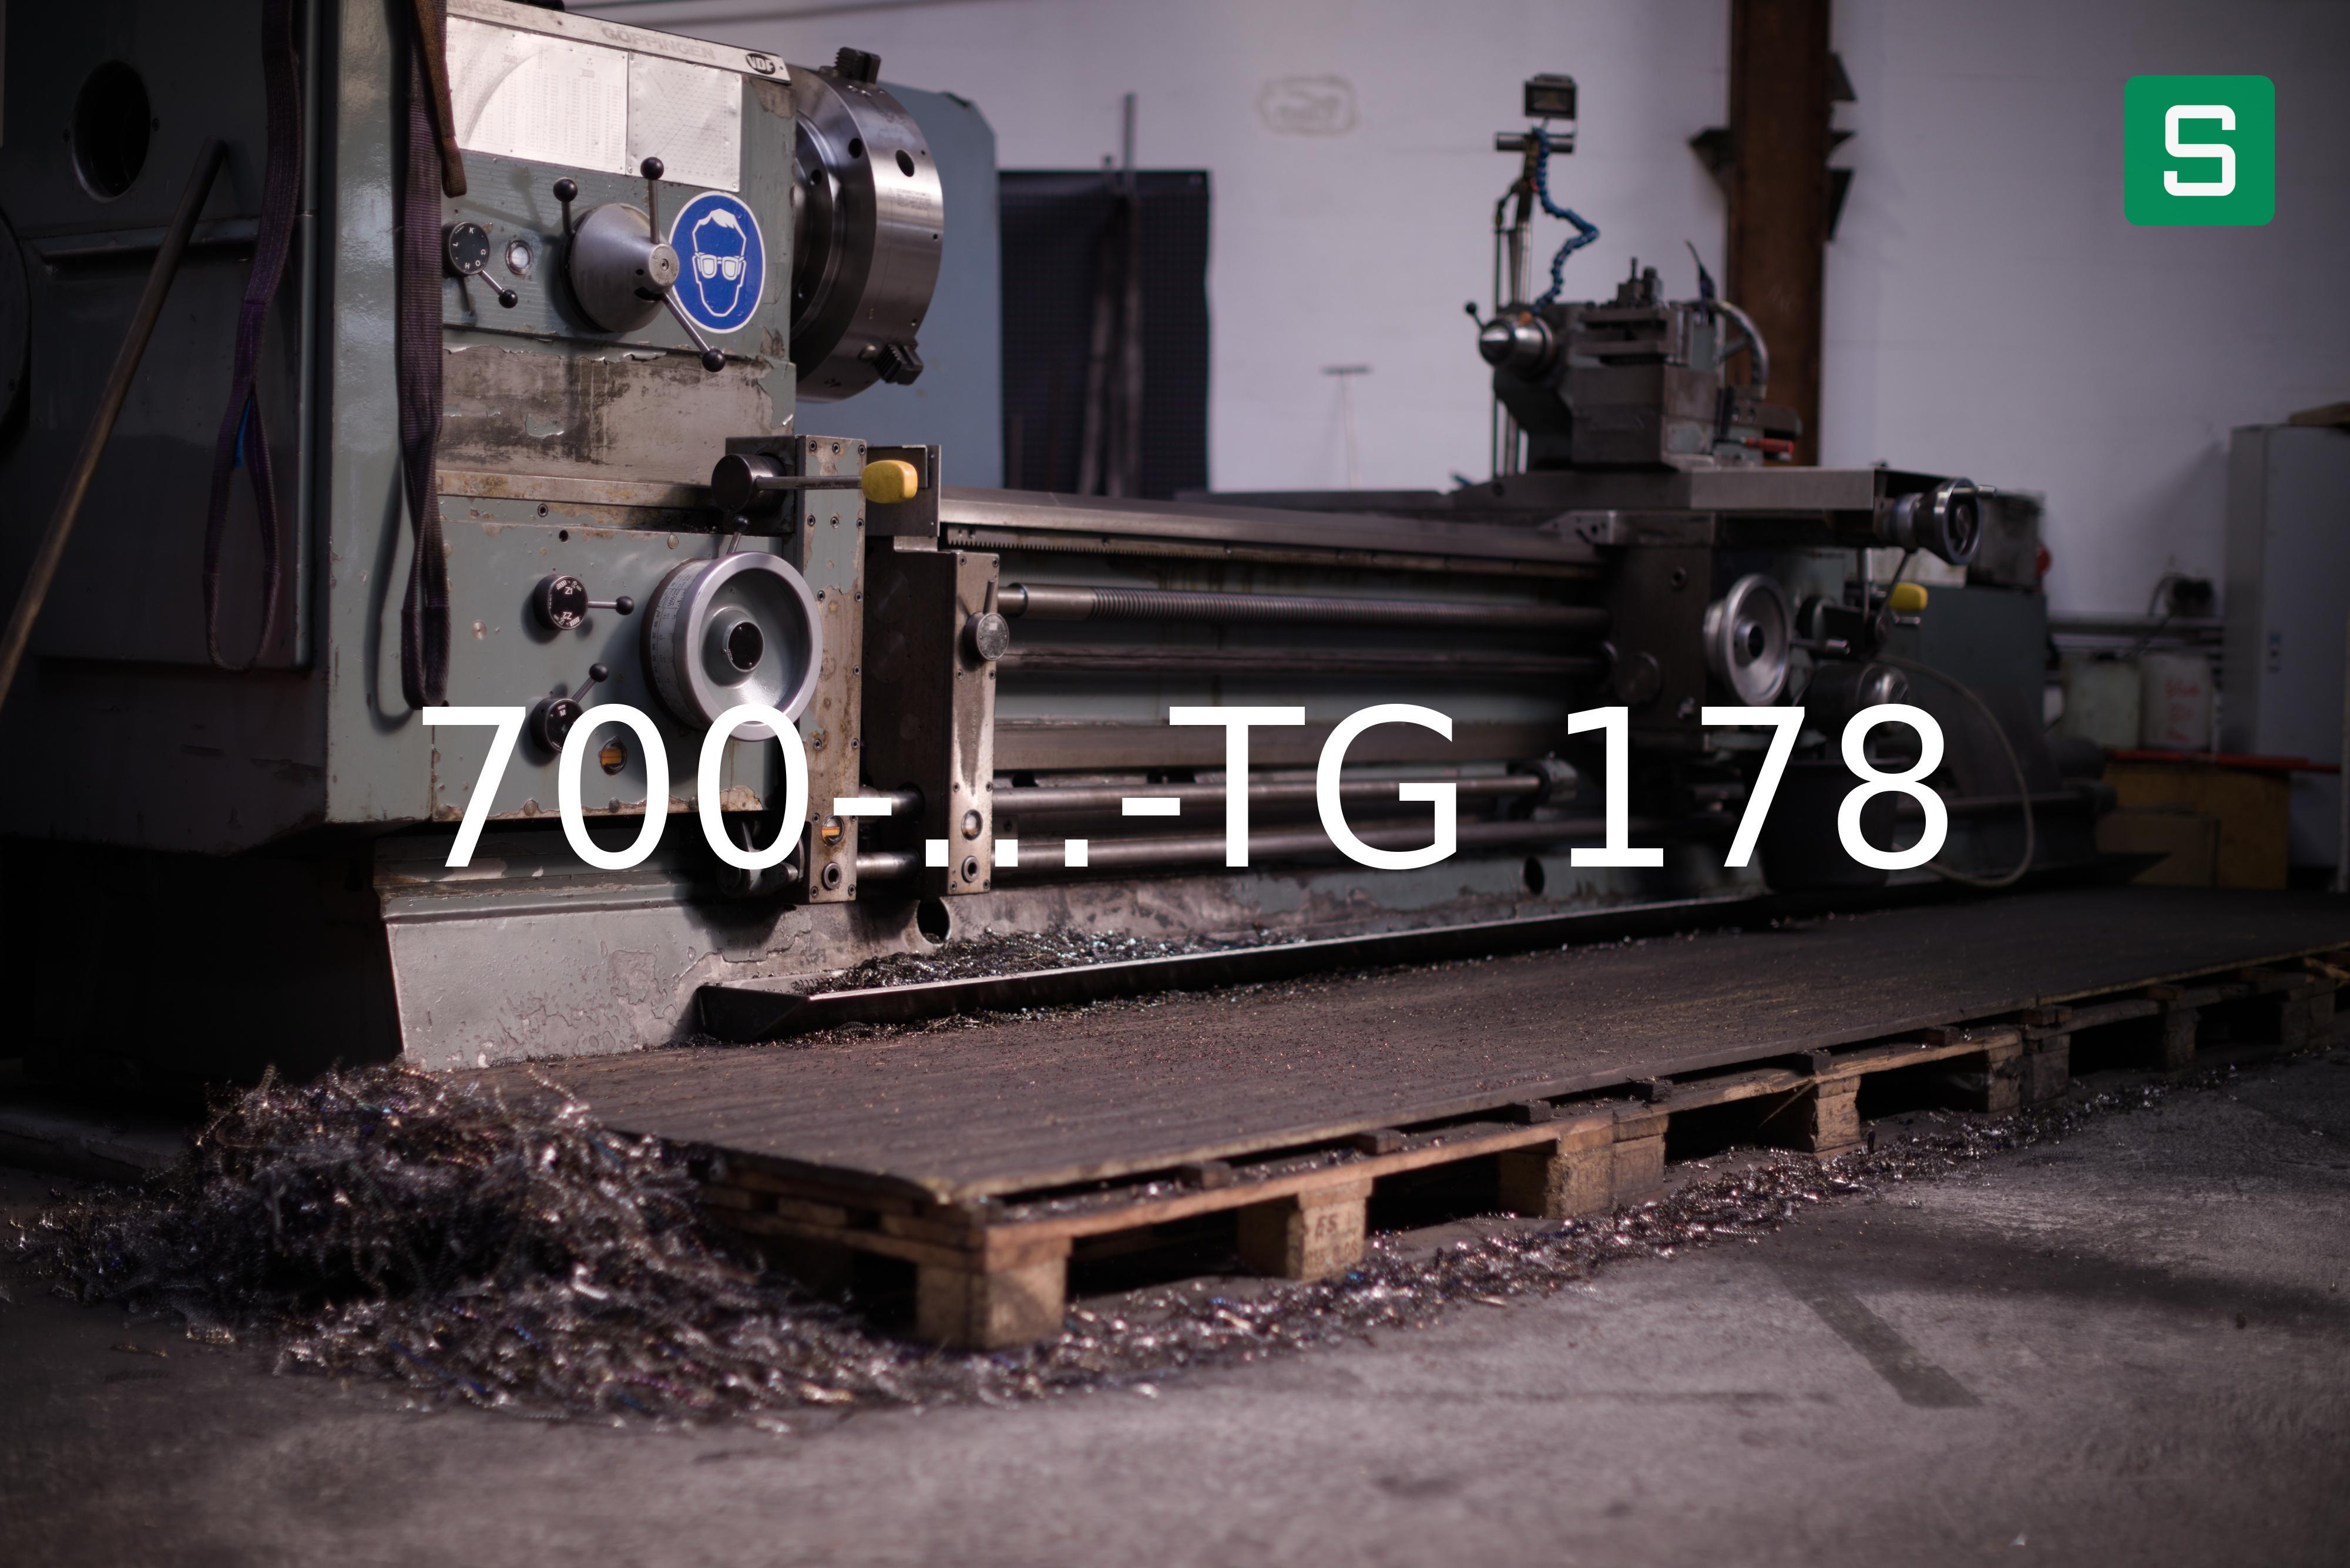 Steel Material: 700-...-TG 178